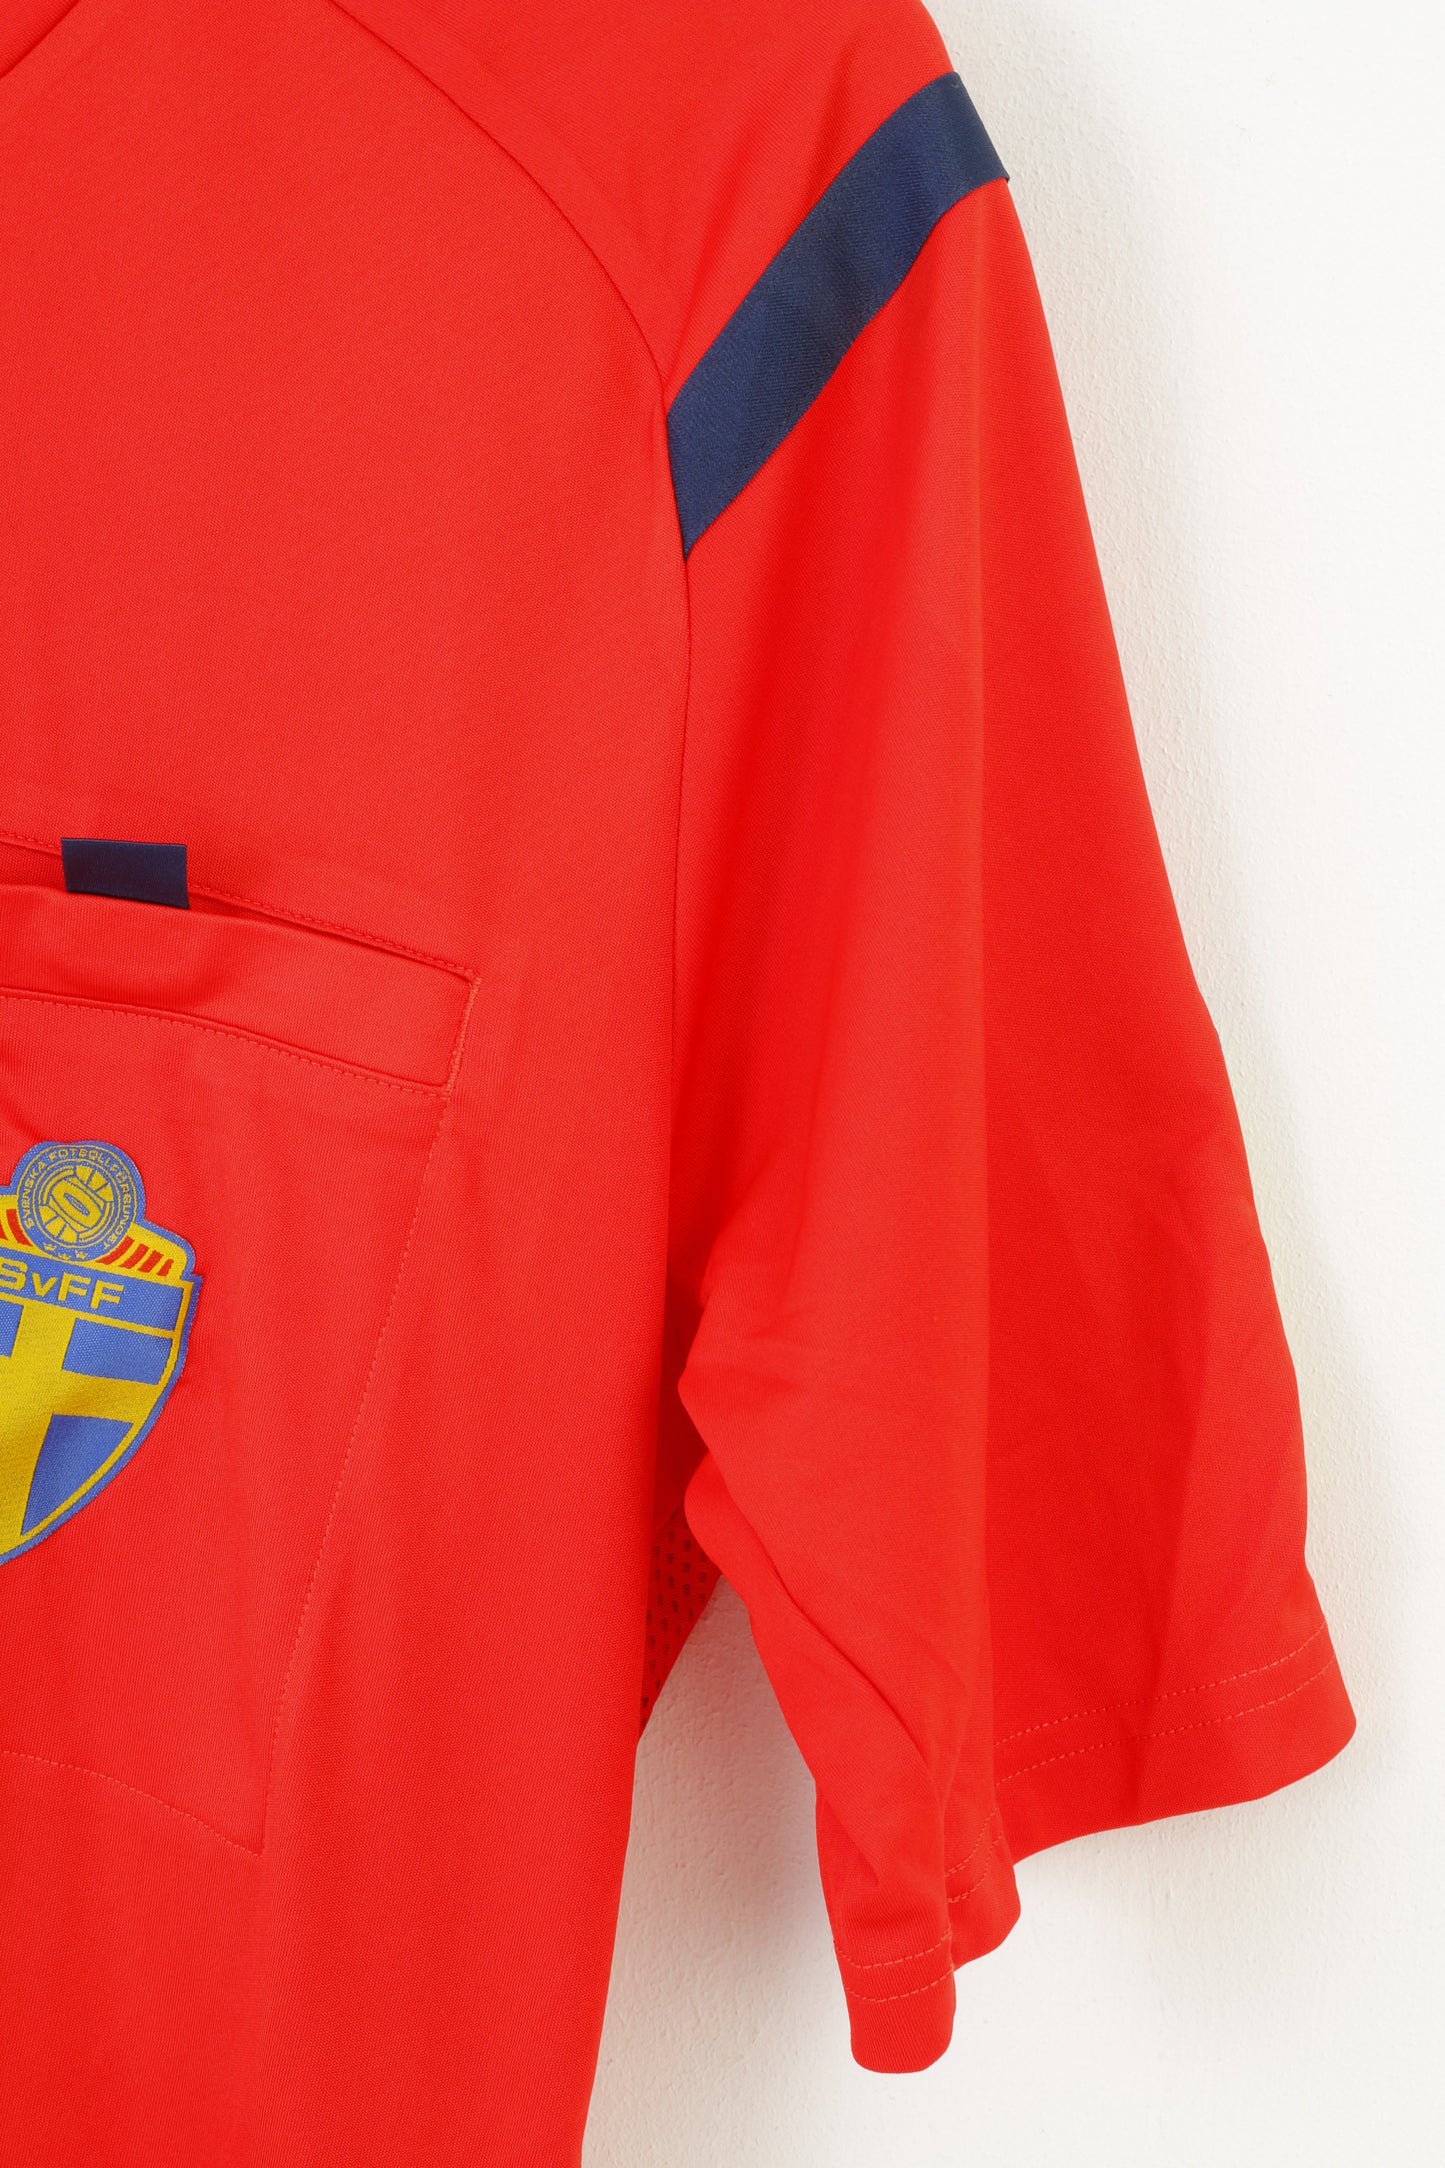 Adidas Men M Shirt Red Football Club Svenska Fotbollförbundet Crew Neck Training Sportswear  Top